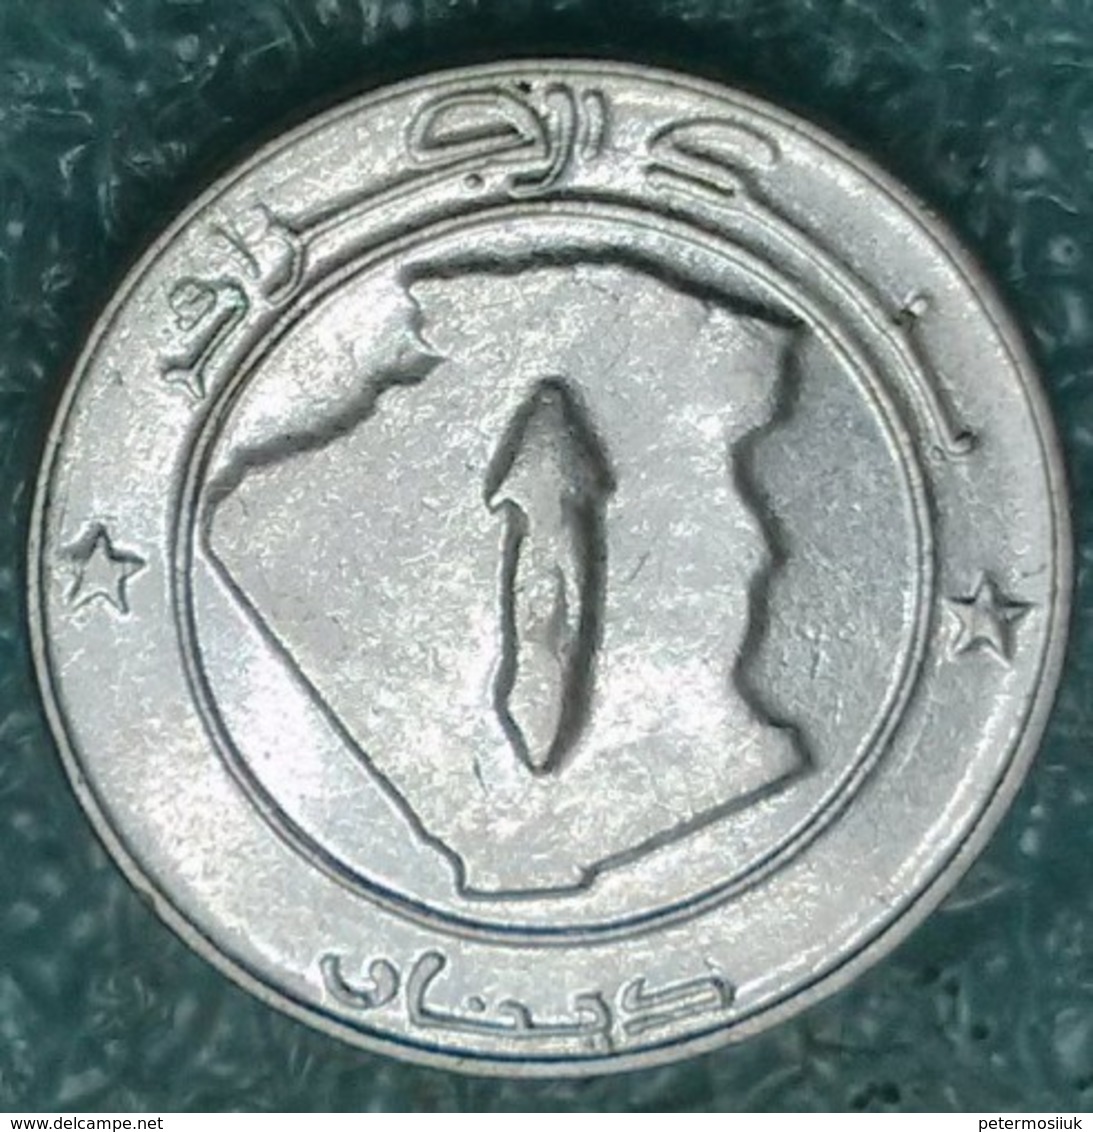 Algeria 1 Dinar, 2002 Date Of Islamic/Gregorian: 1423 2002 - Algérie